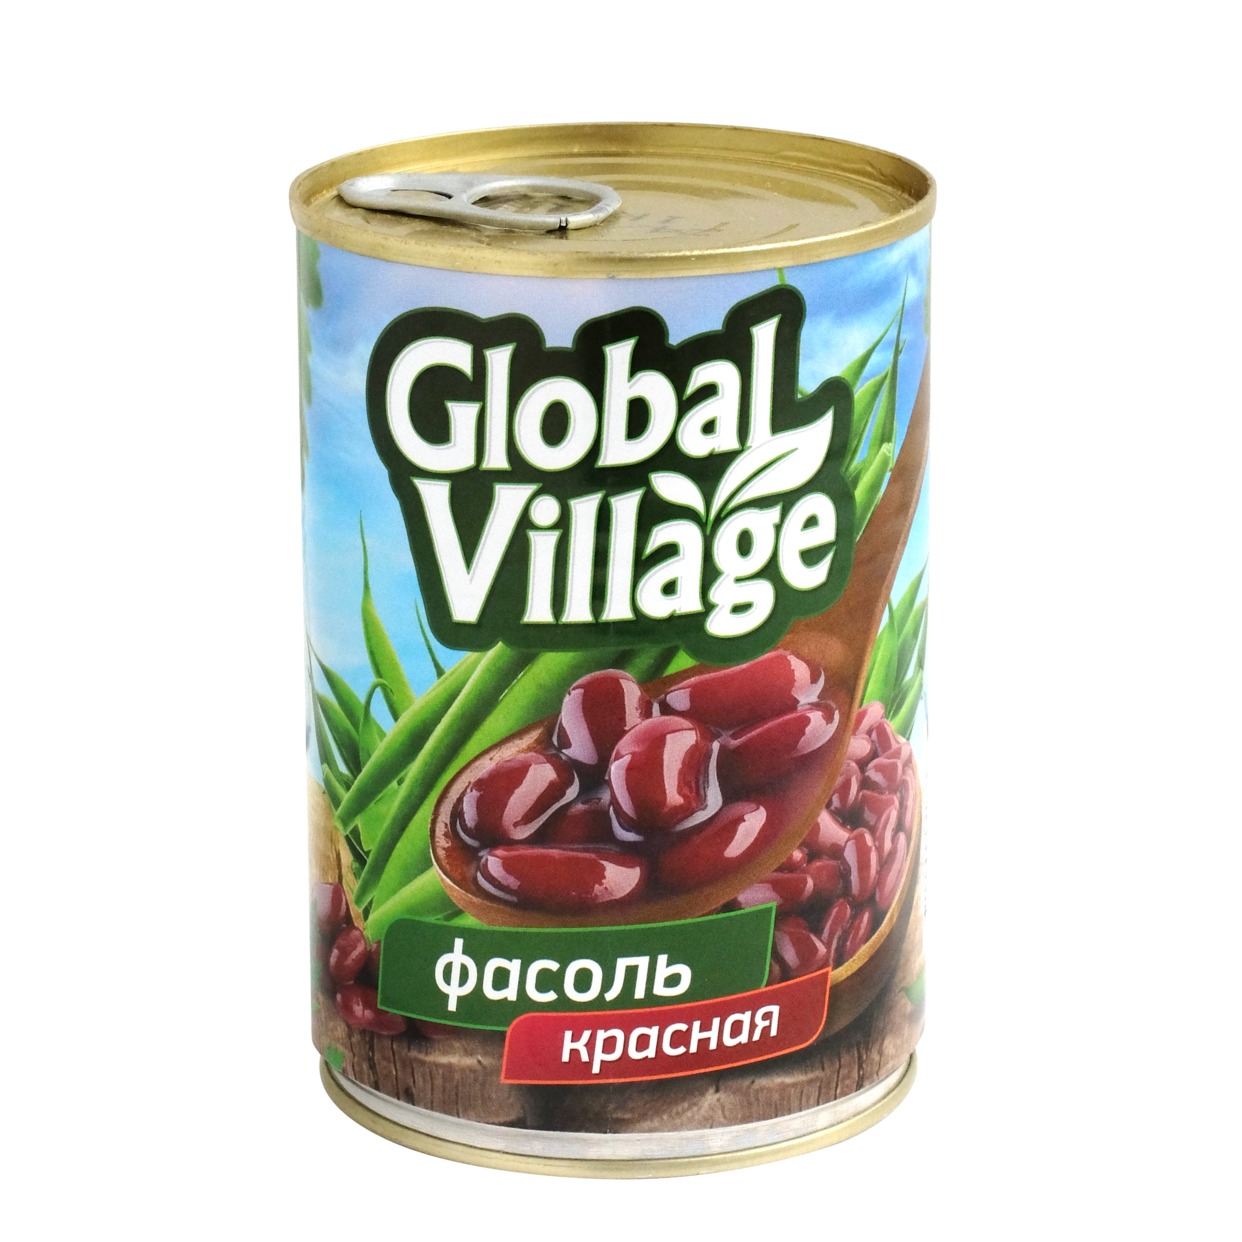 Фасоль Global Village, красная, в собственном соку, 425 мл по акции в Пятерочке